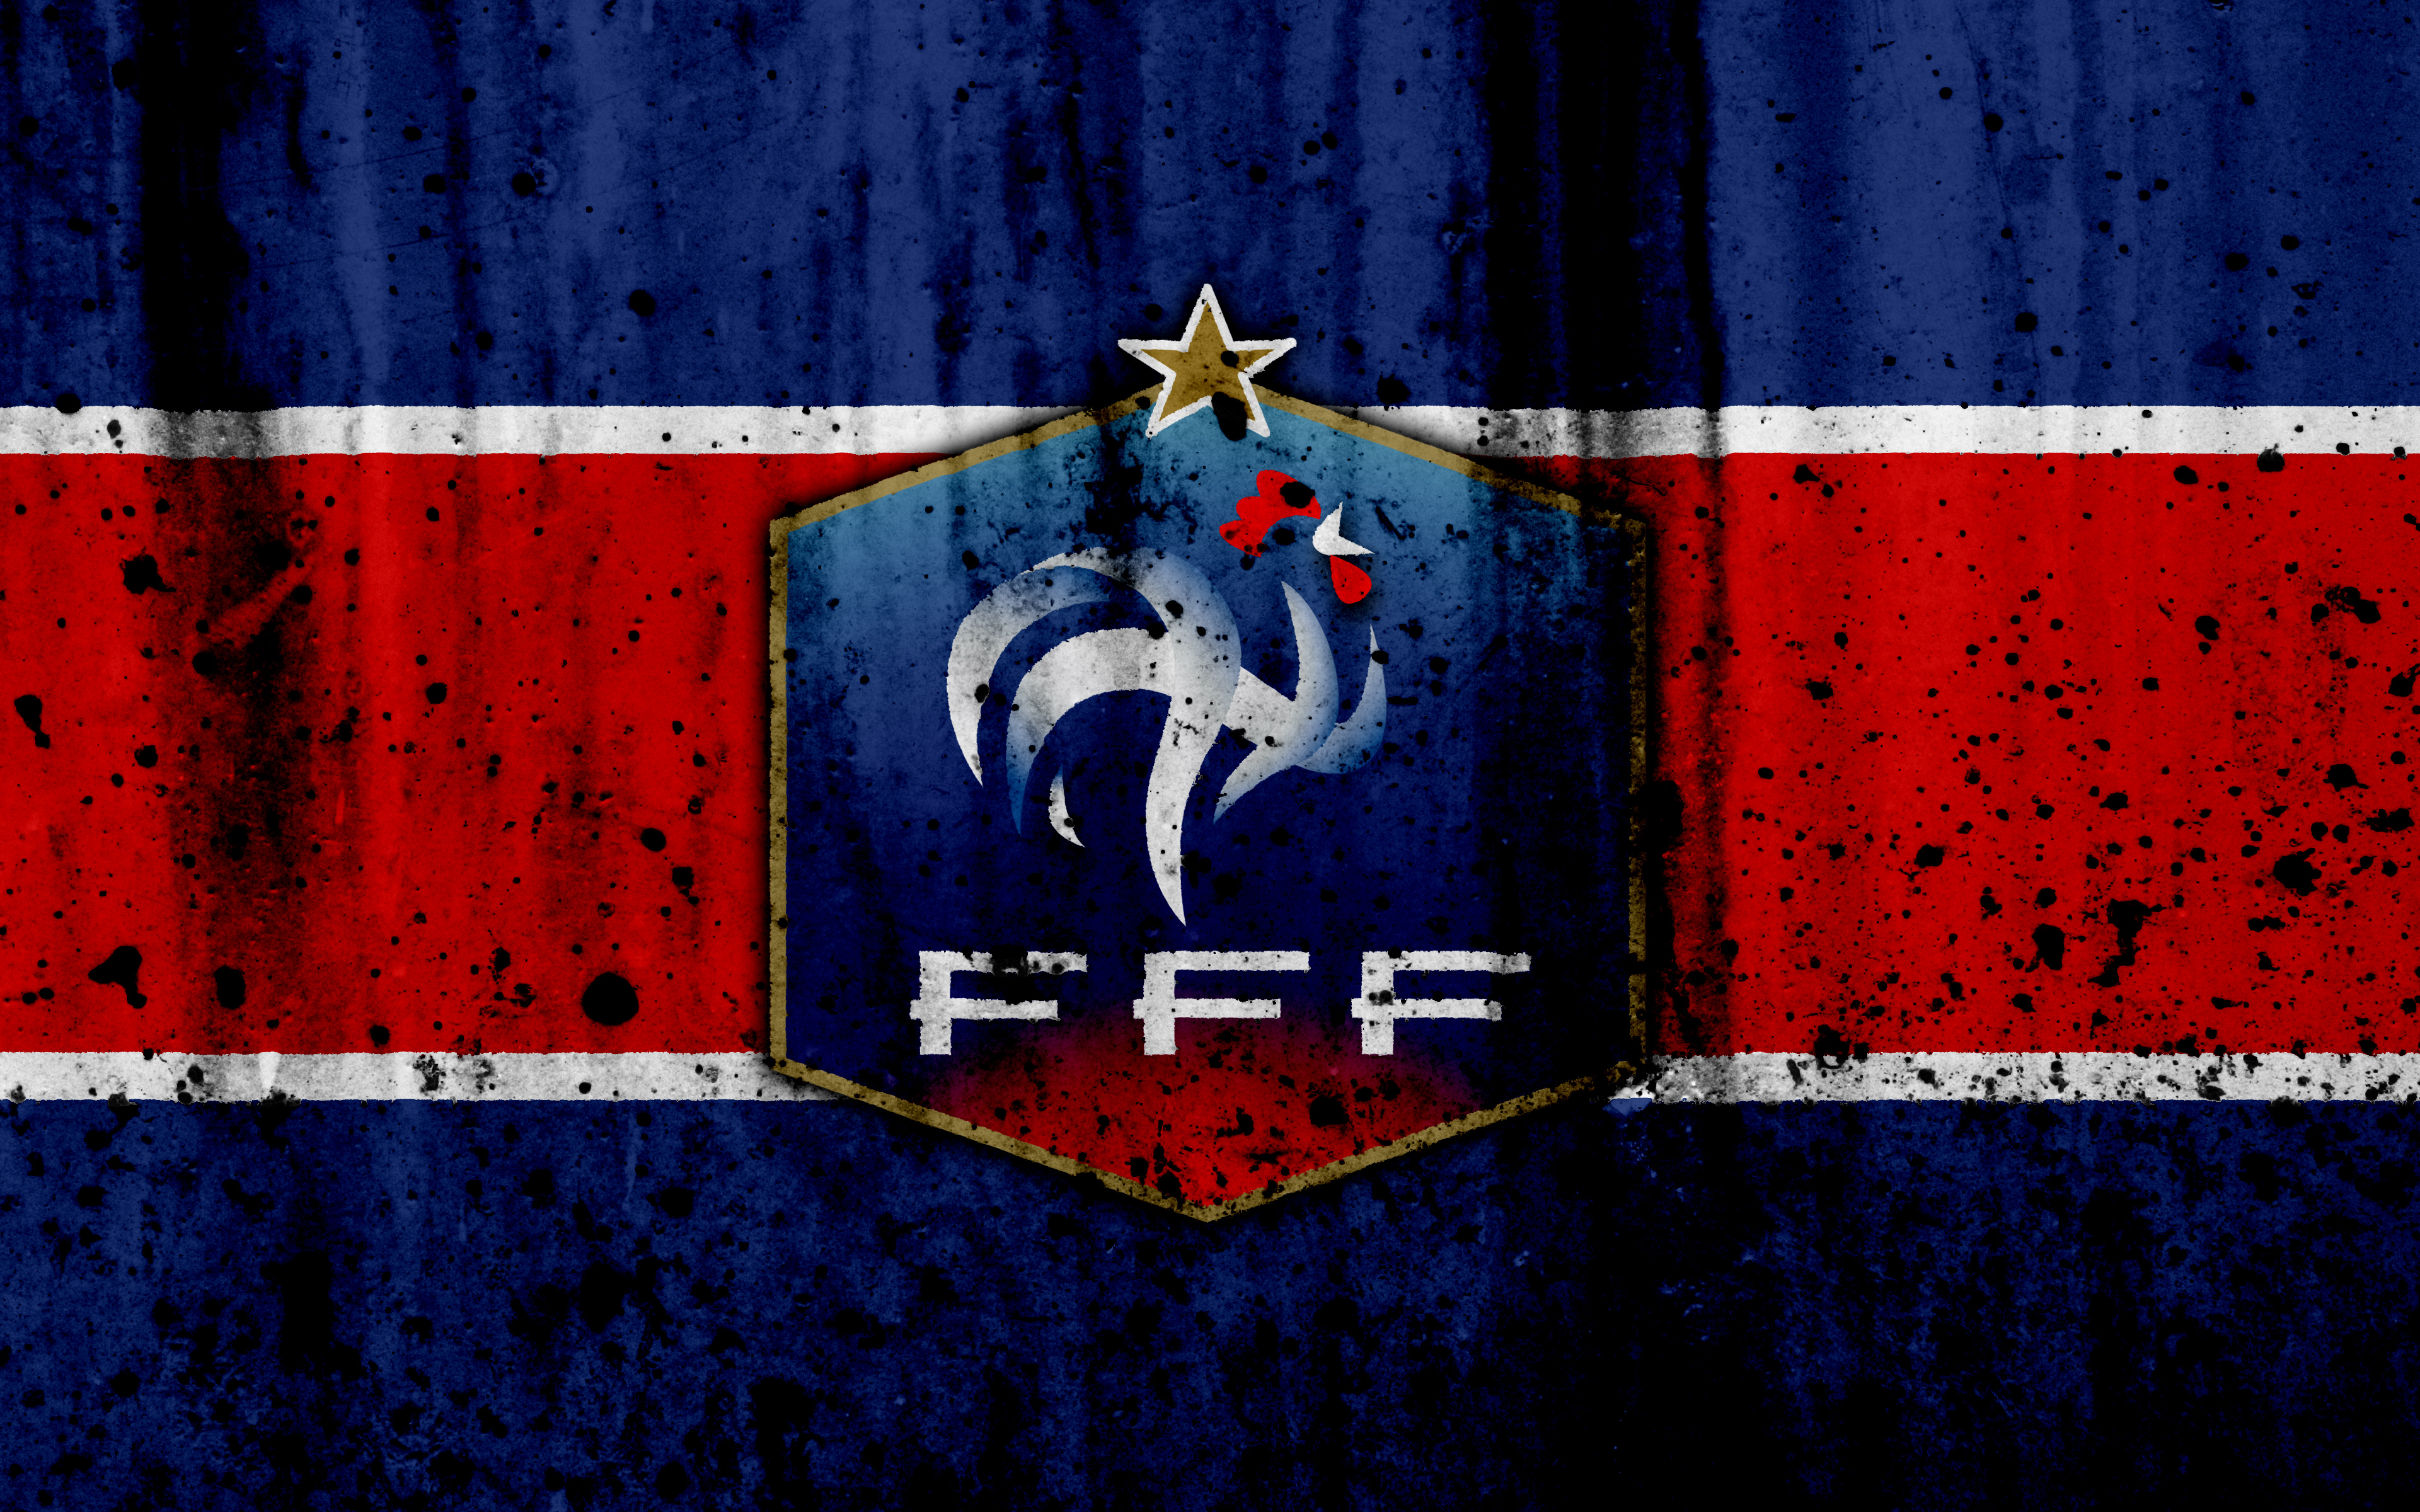 france national football team